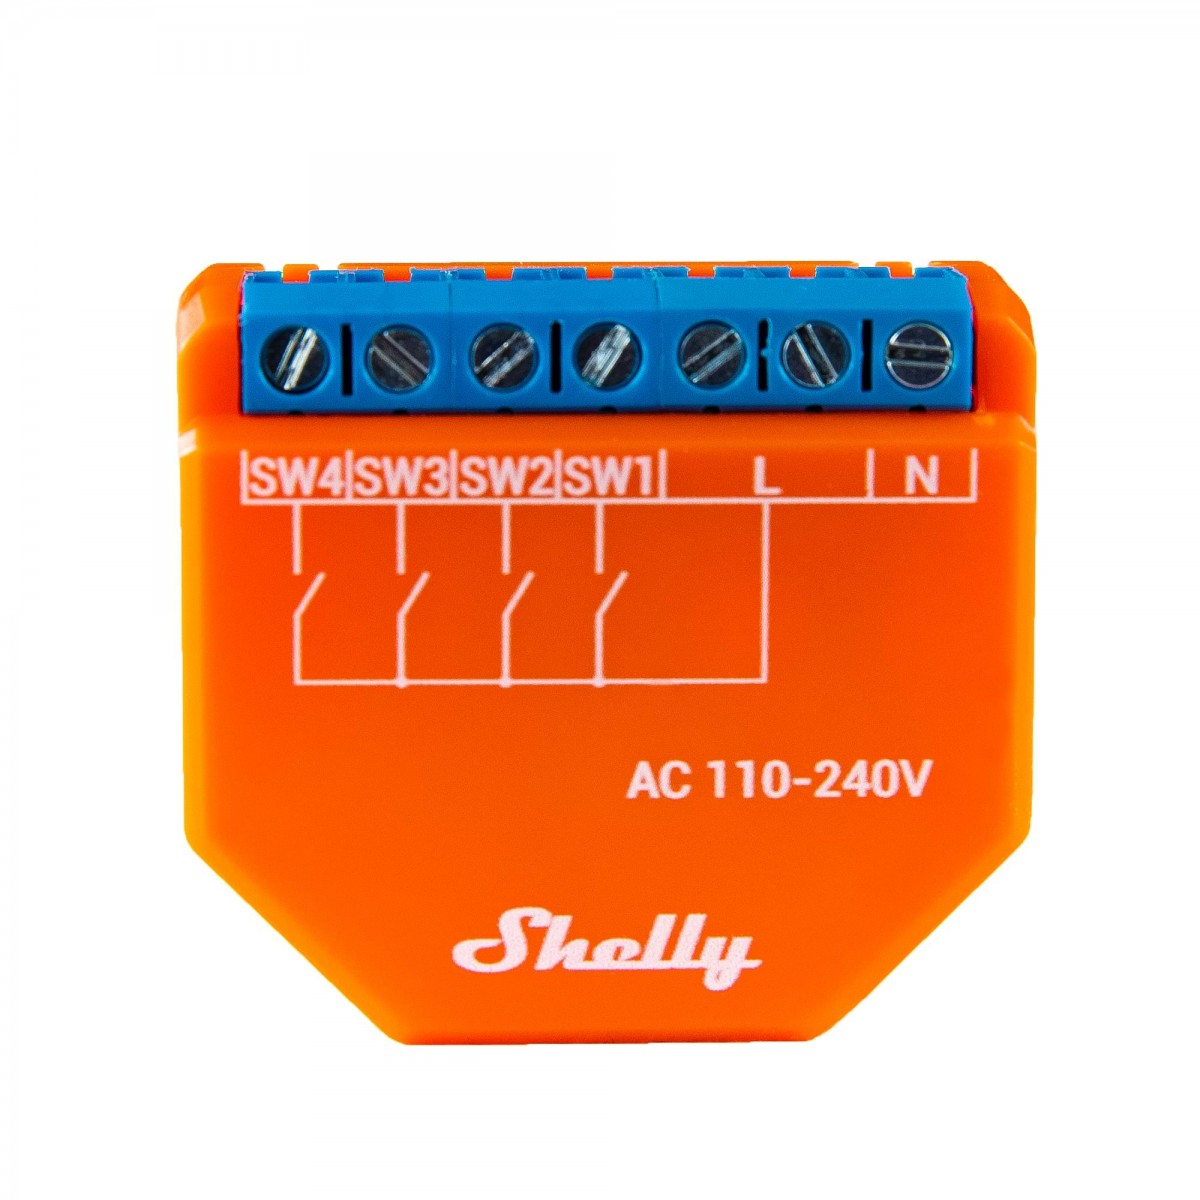 Shelly Plus I4, WLAN Eingangsmodul / Tasterschnittstelle mit 4 Eingängen, AC: 110 - 230V